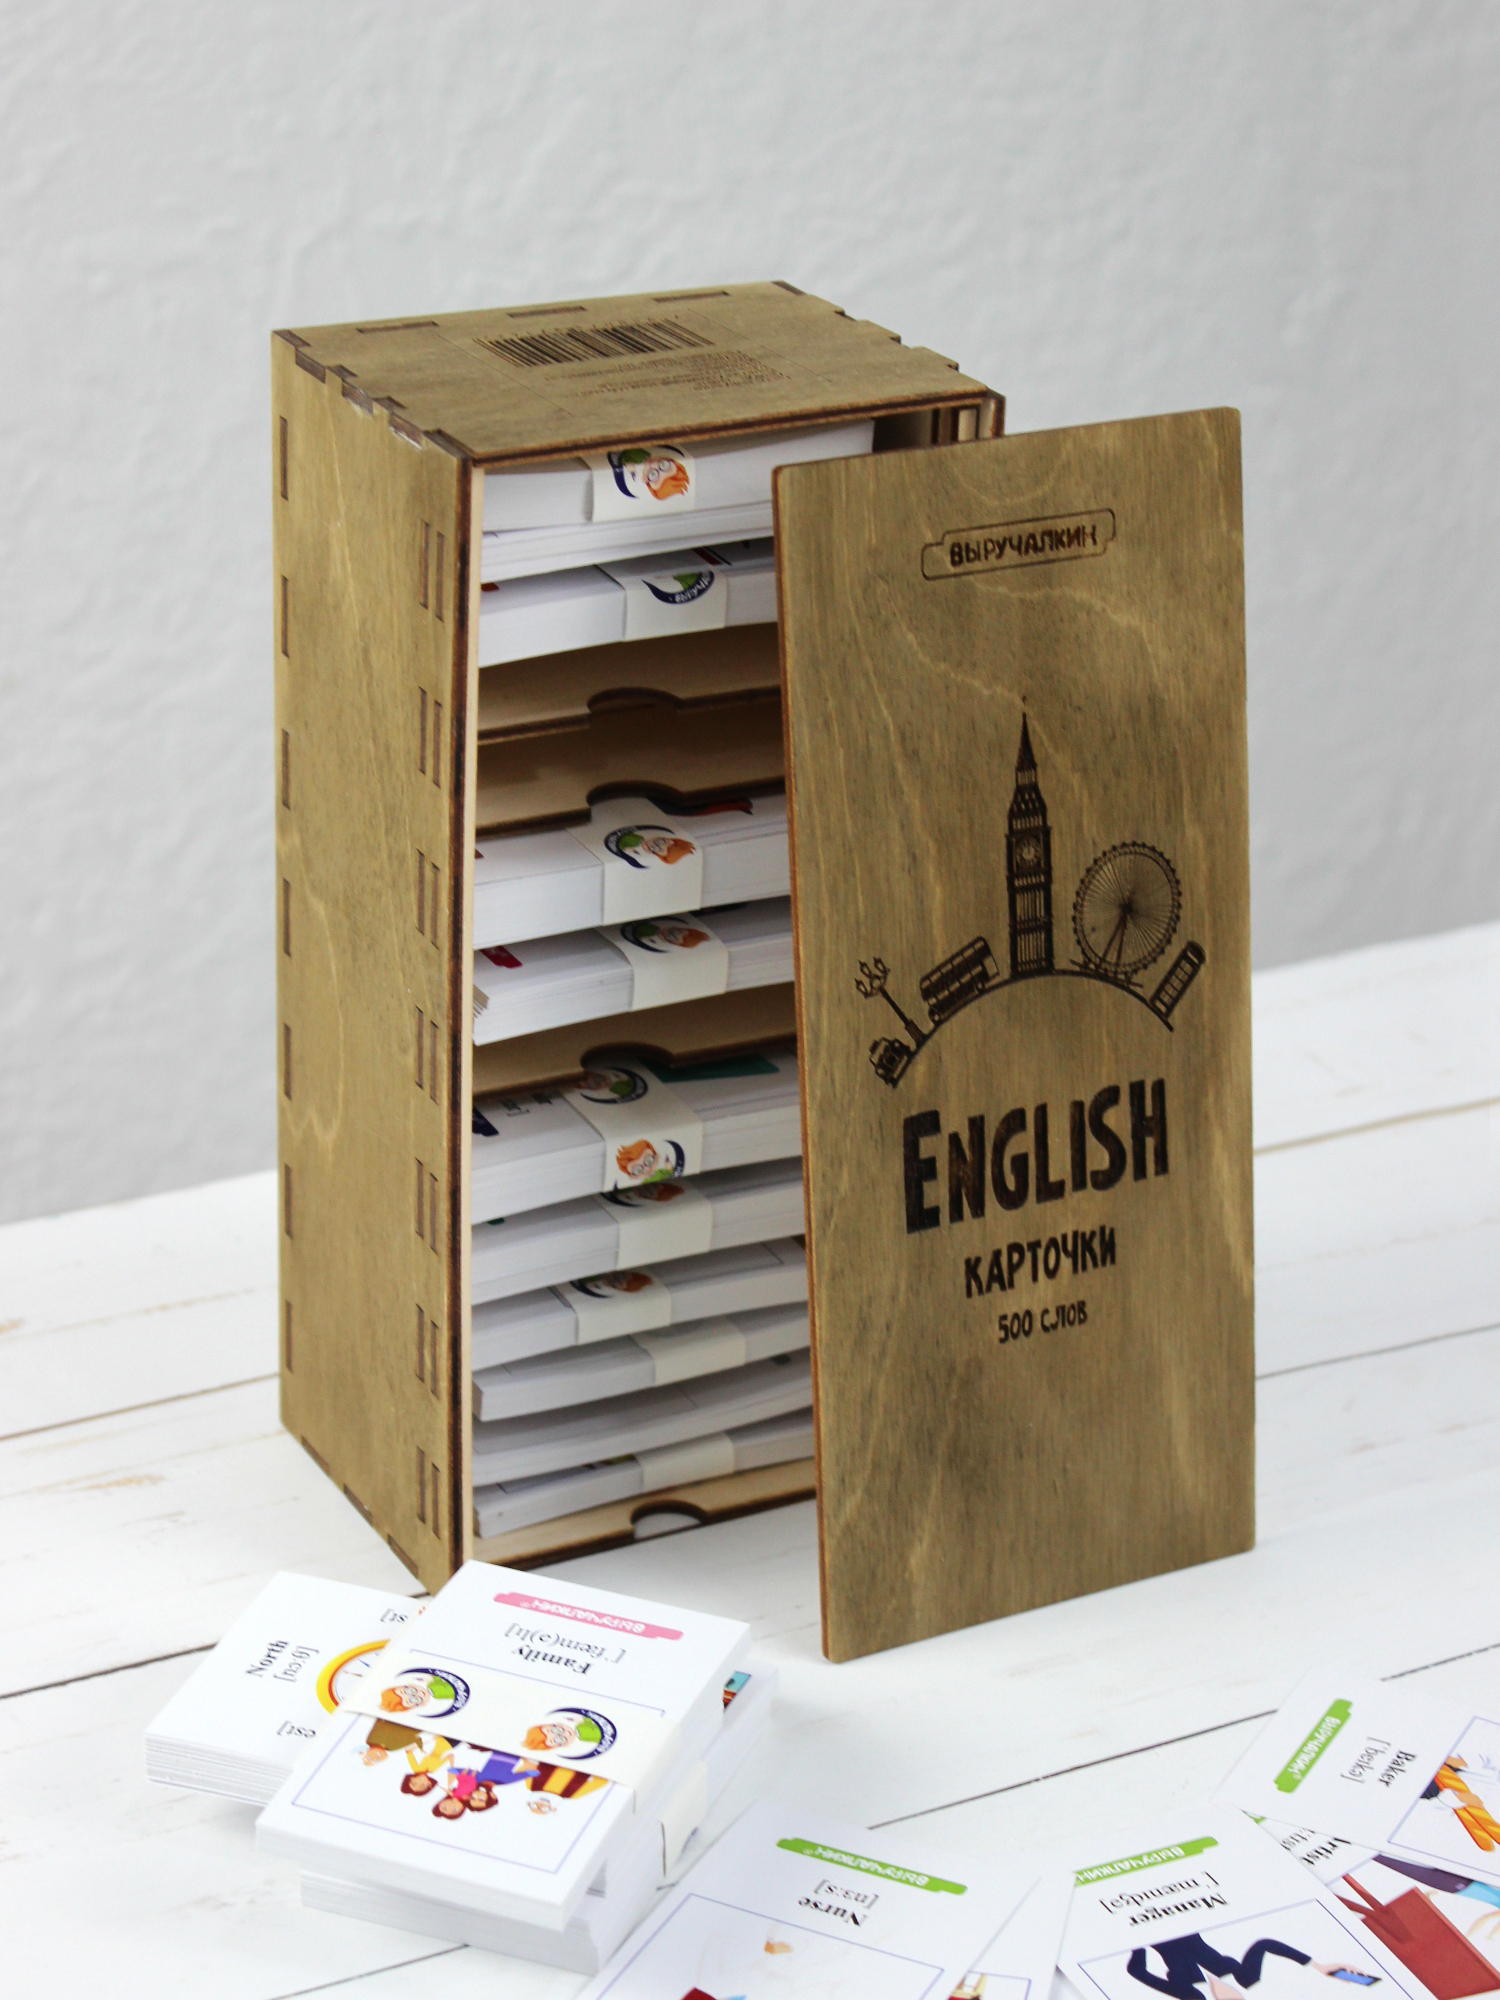 8 500 словами. Выручалкин немецкий язык 500 слов в деревянном боксе набор карточек. Выручалкин карточки.